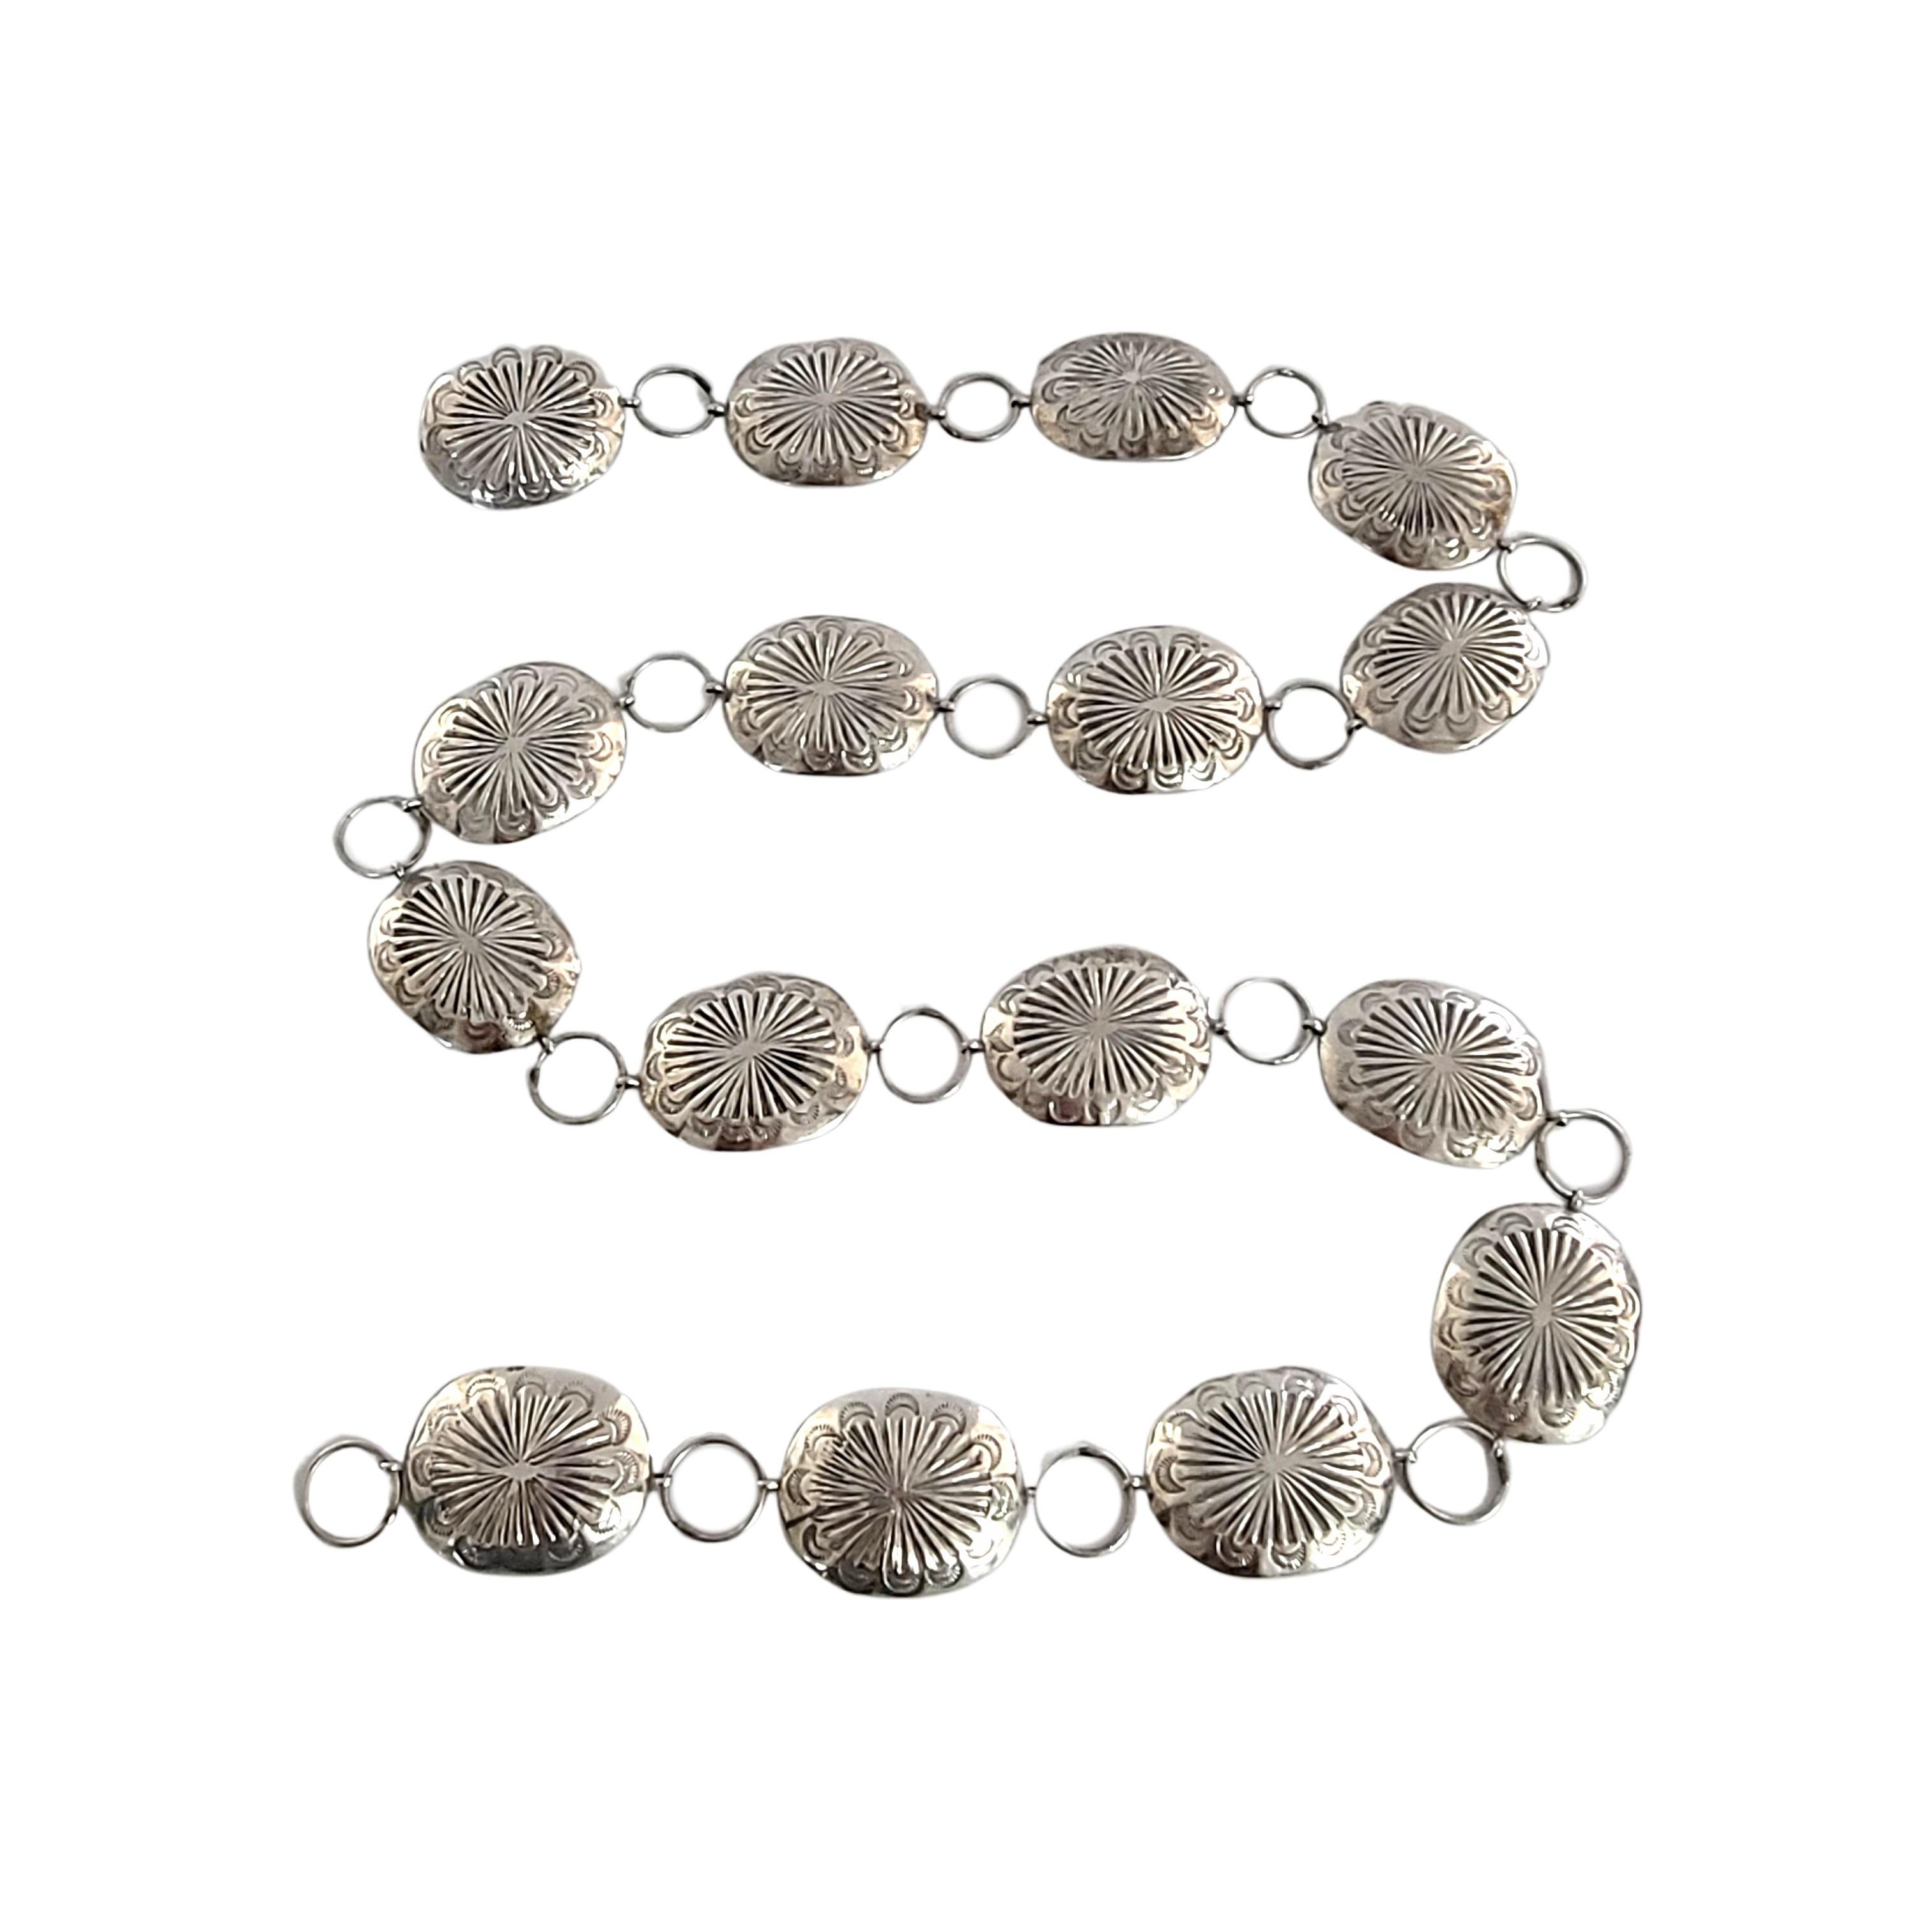 Vieille chaîne de ceinture en argent concho.

Cette chaîne de ceinture est un bel exemple de l'artisanat amérindien. Elle présente un motif estampé sur 16 conchos alternant avec des maillons ronds.

Mesure environ 37